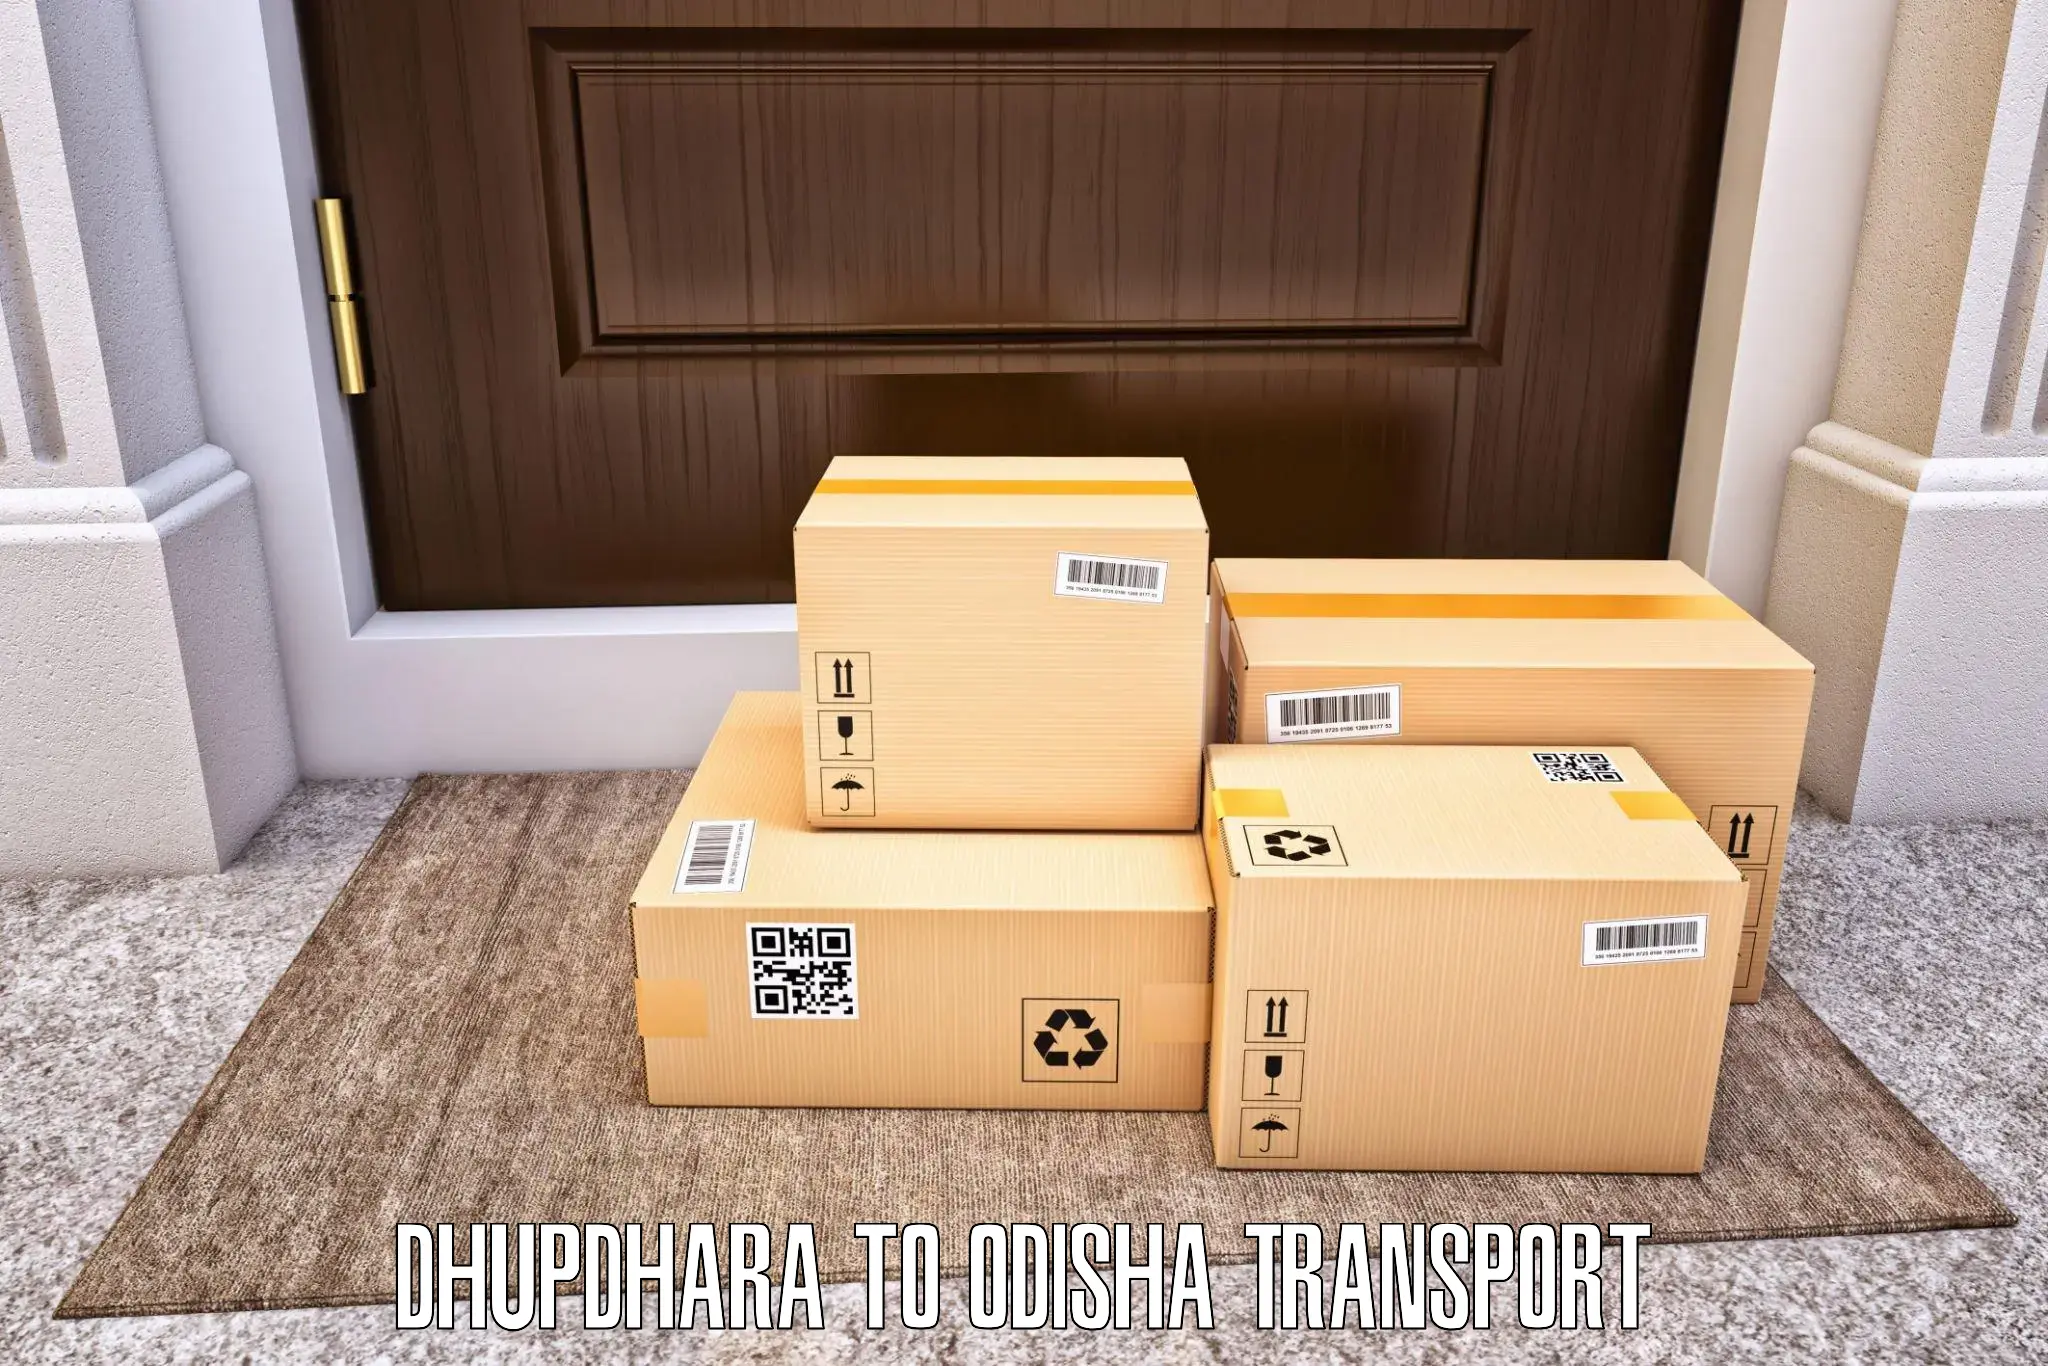 Daily parcel service transport Dhupdhara to Kantabanji